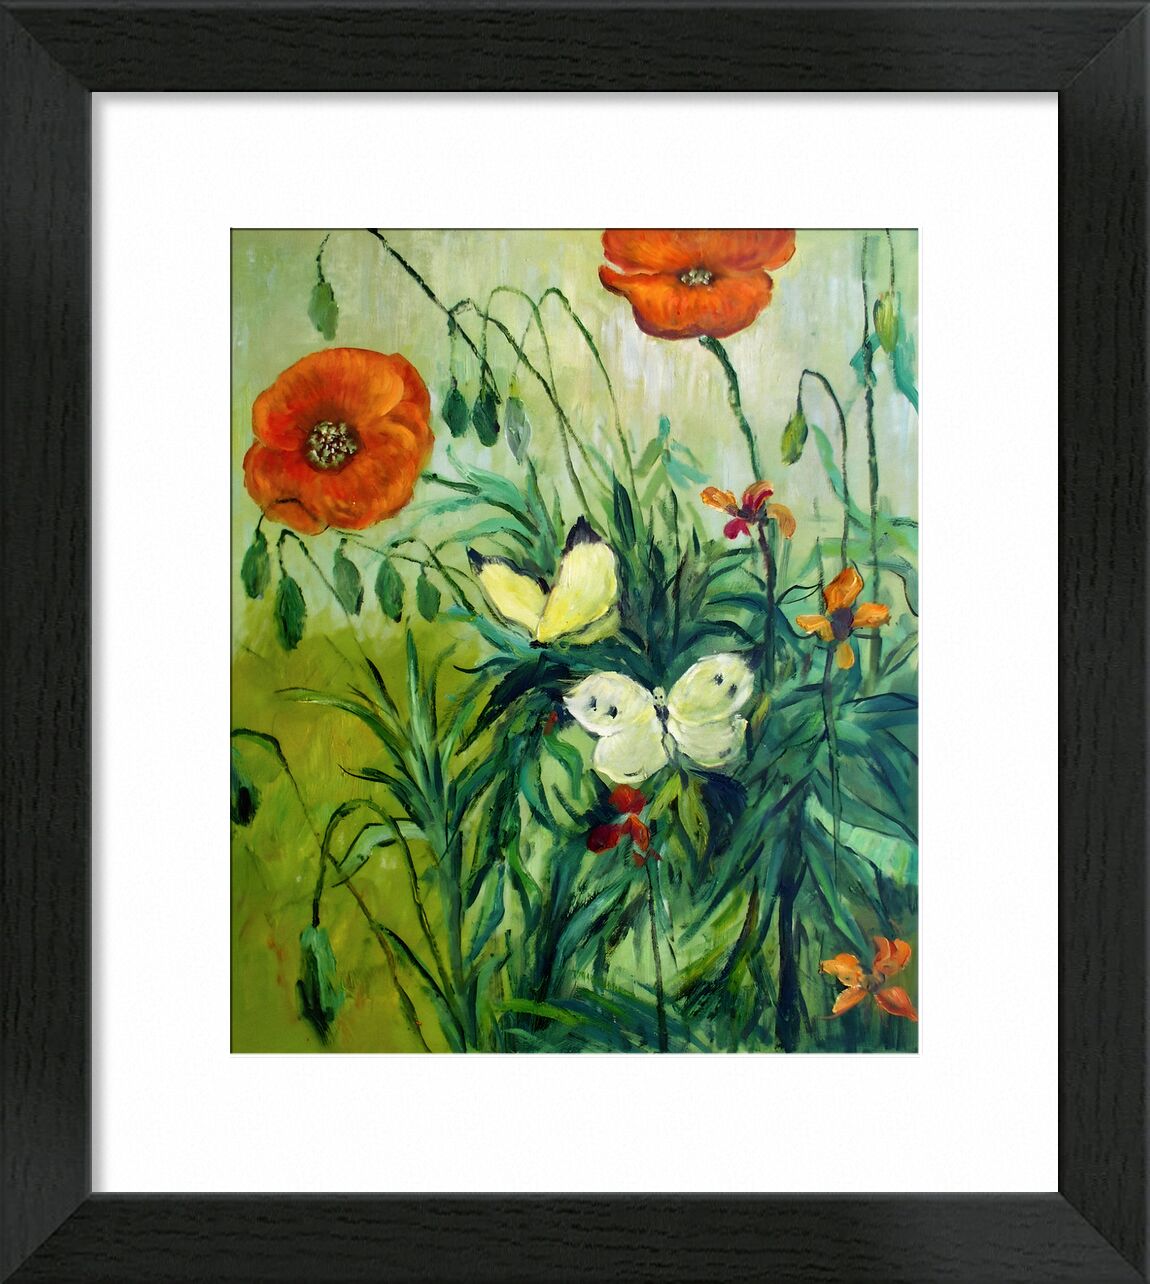 Schmetterlinge und Mohn - Van Gogh von Bildende Kunst, Prodi Art, Van gogh, VINCENT VAN GOGH, Schmetterlinge, Mohnblumen, Natur, Malerei, wild